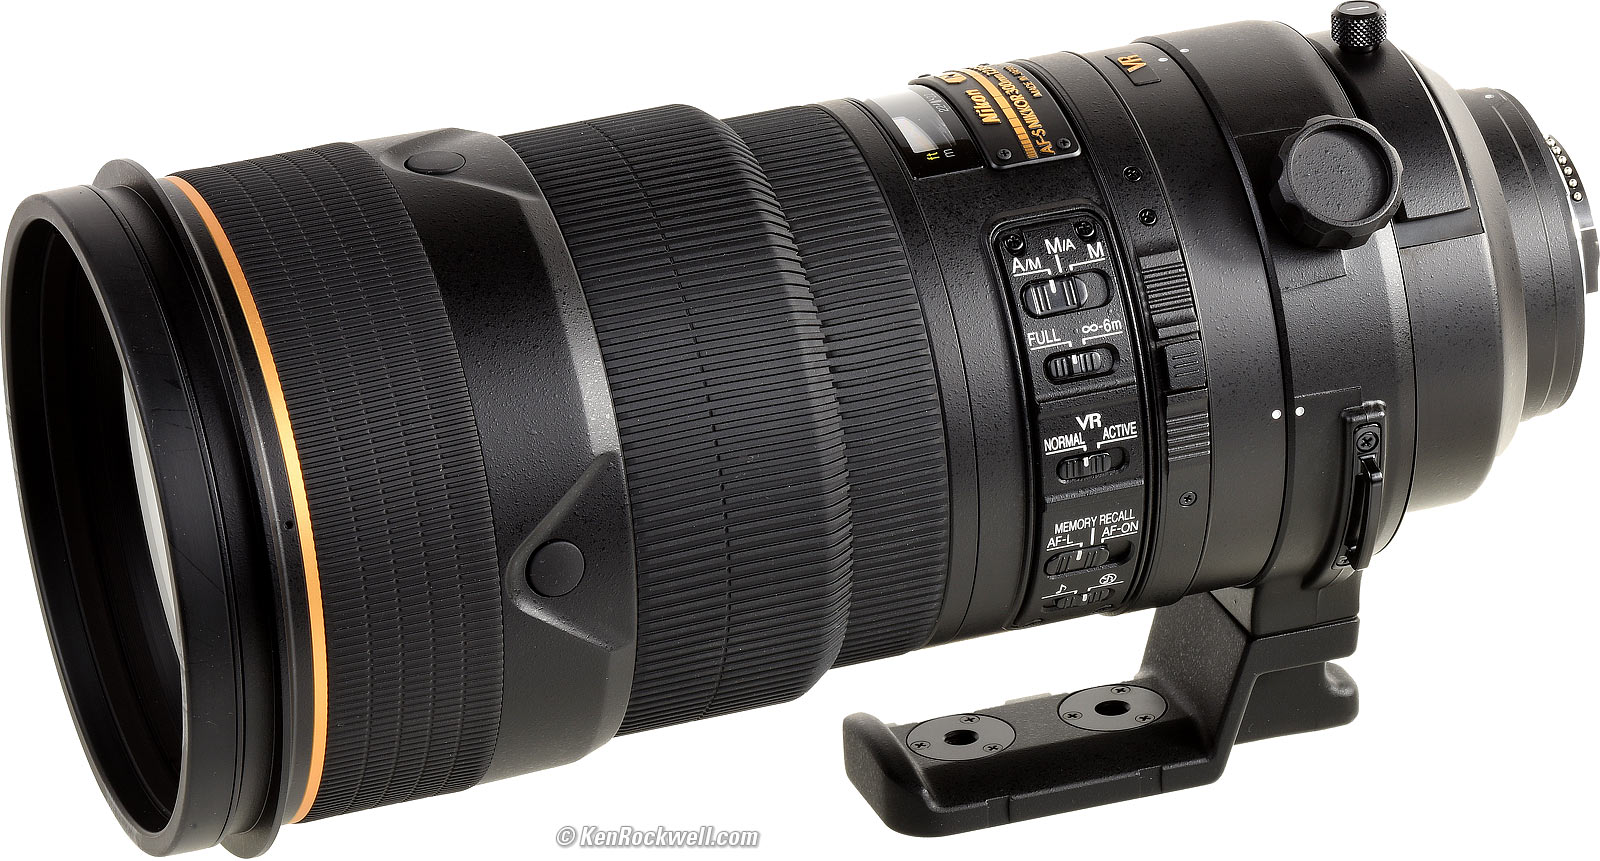 DUAL IMPERMEABILE kanati Camo lente della fotocamera/Copertura per NIKON 300mm F2.8 G ED VR II 